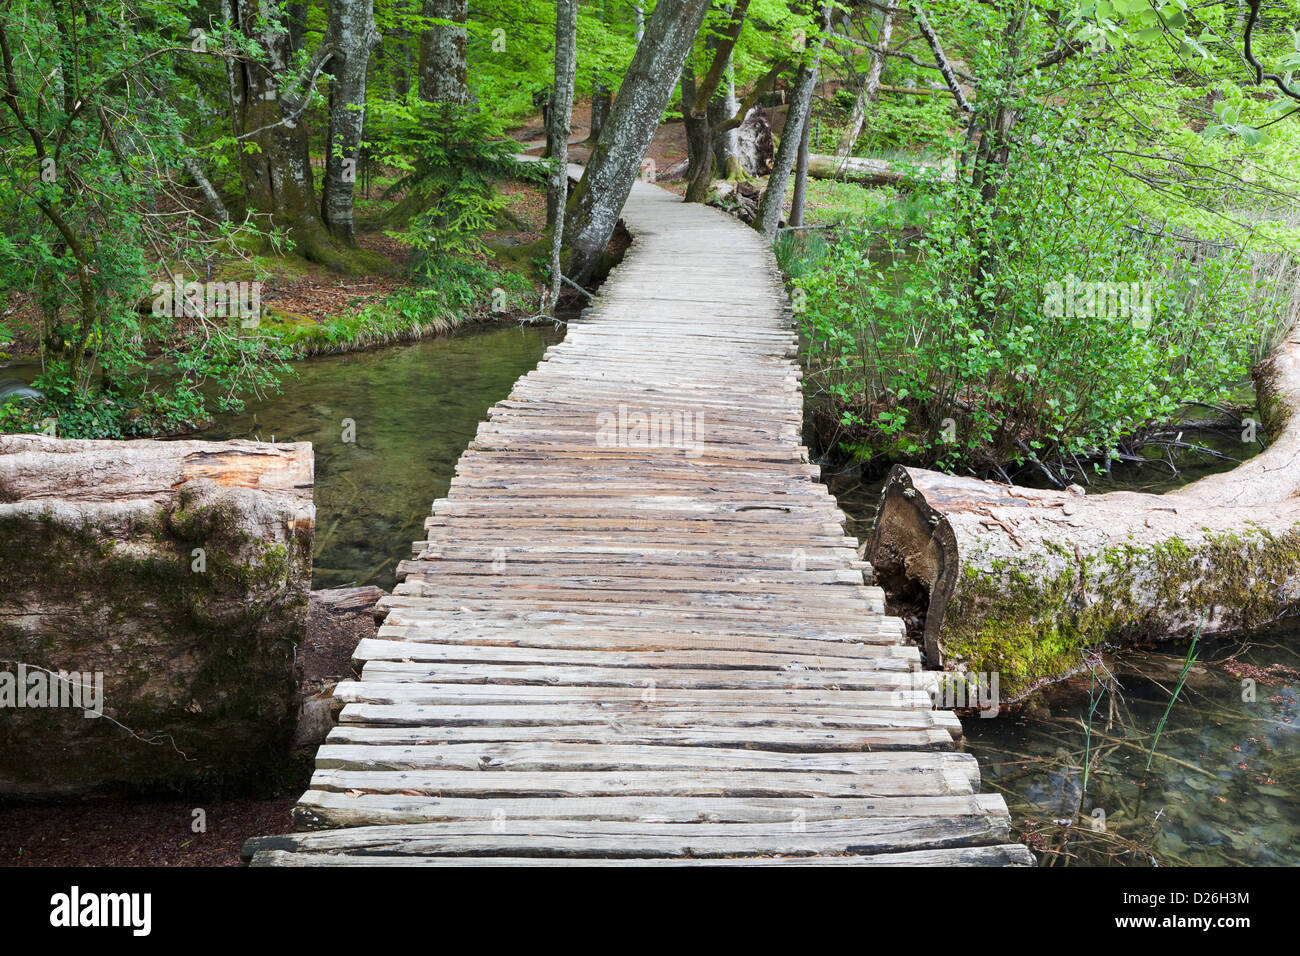 Les lacs de Plitvice dans le parc national Plitvicka Jezera en Croatie. Chemin de planches typiques. L'Europe du Sud, Croatie Banque D'Images